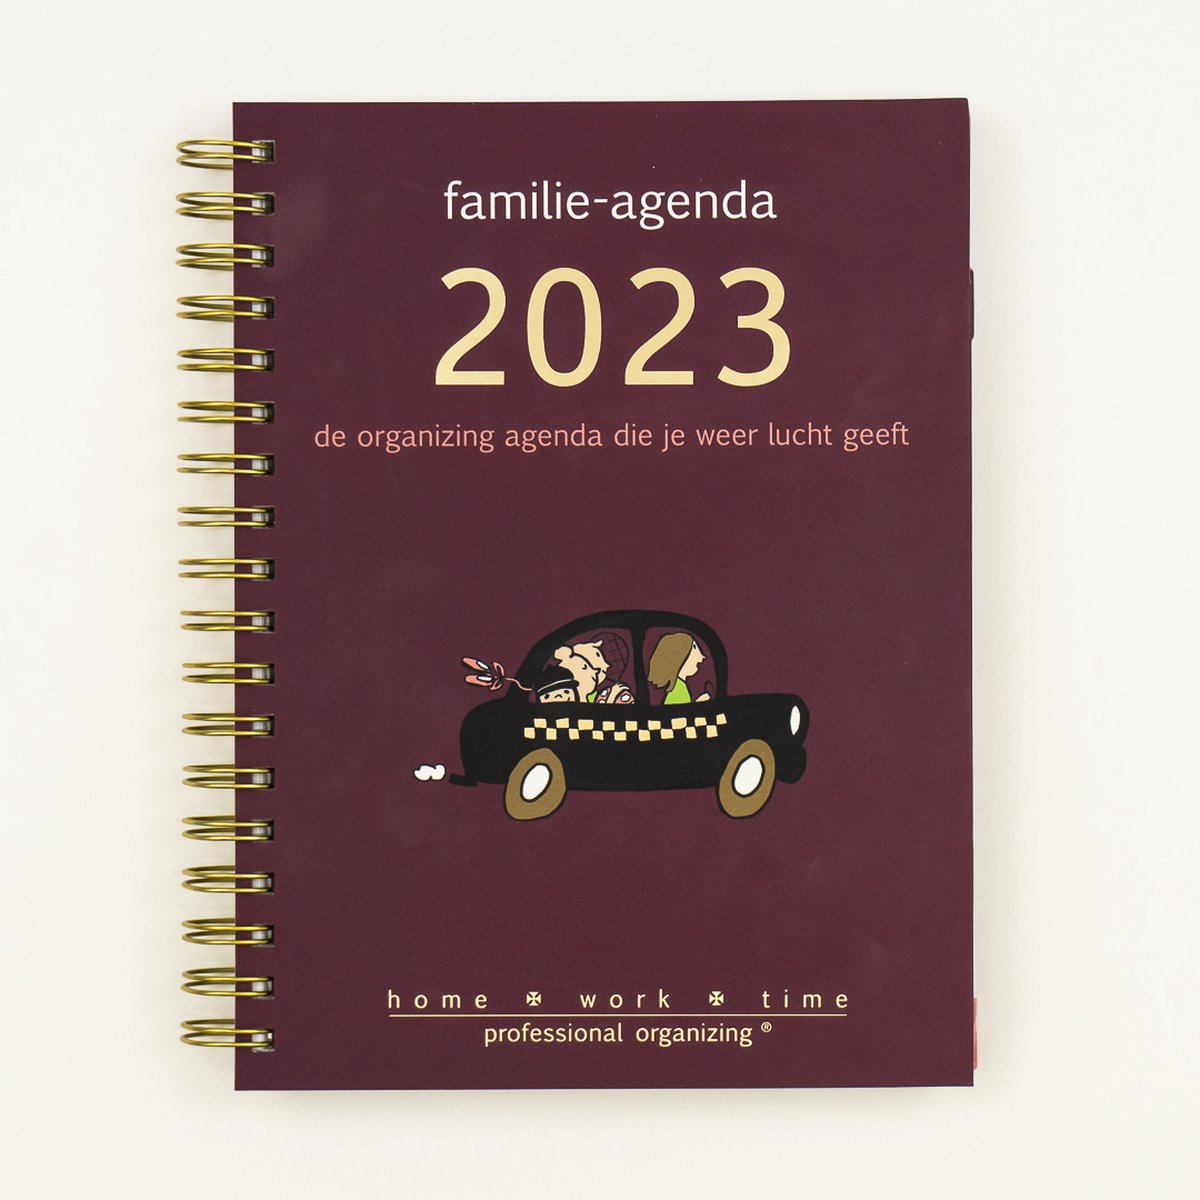 Bekking & Blitz - Homeworktime familie-agenda 2023 - praktische en complete agenda met een ruime indeling - boordevol handigheden en leuke extras - een agenda die met je meedenkt - kleurrijk geïllustreerd